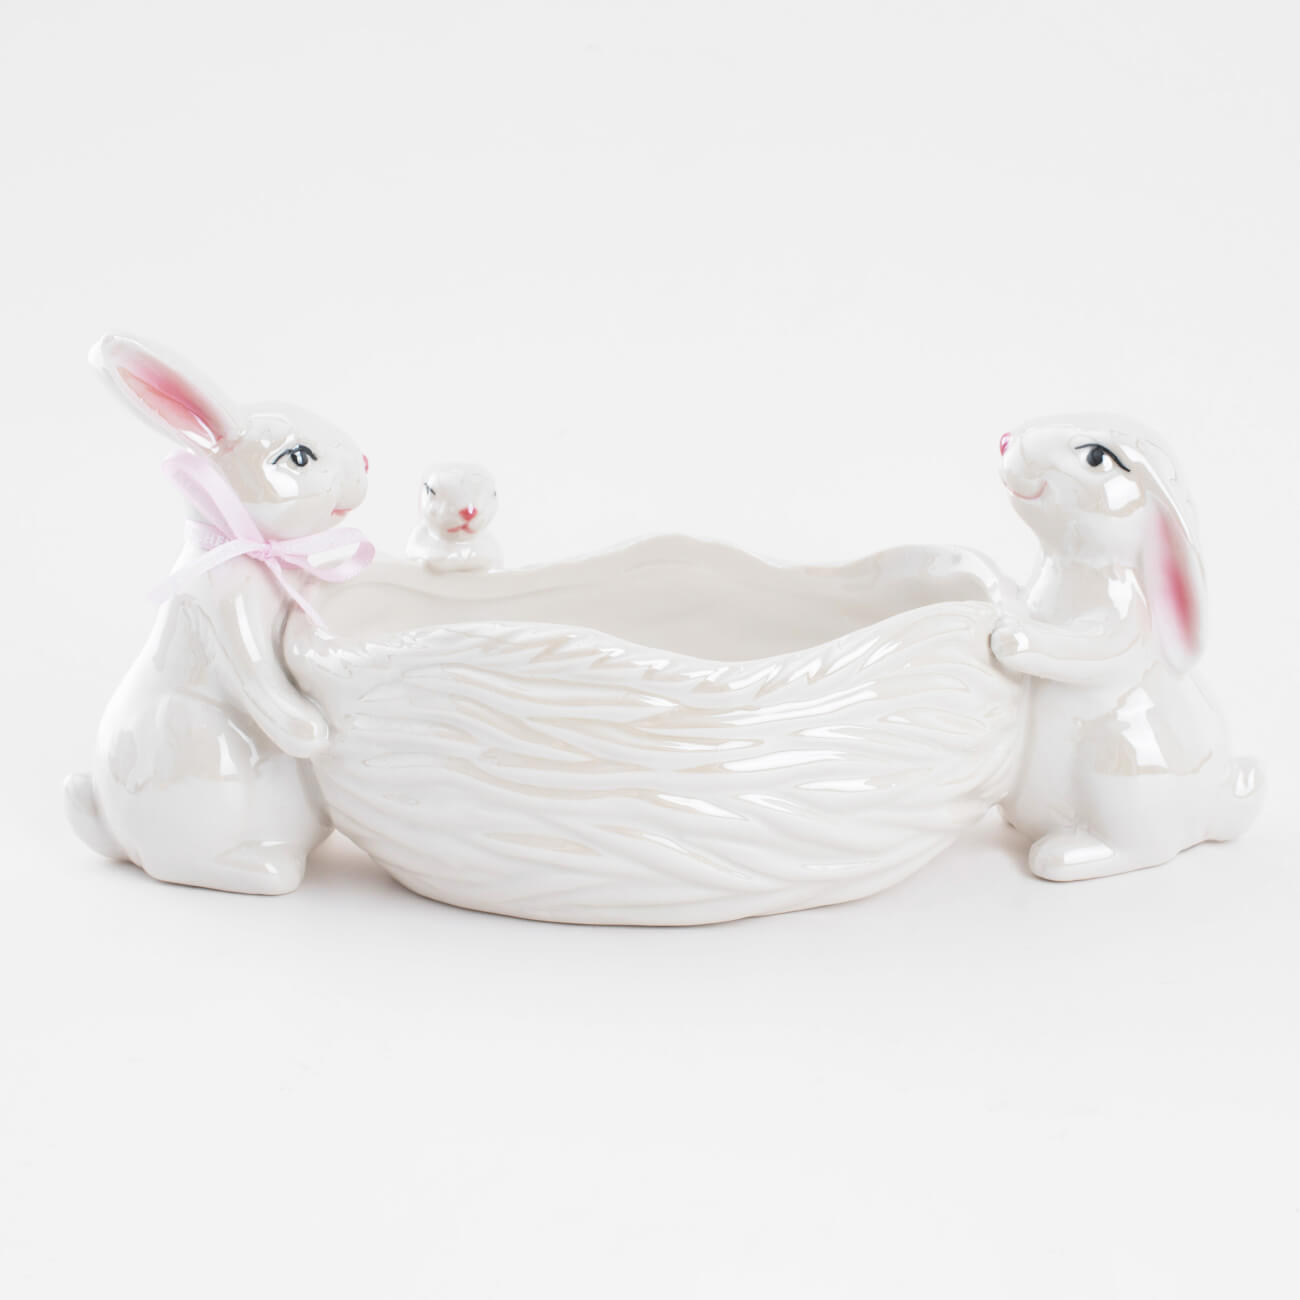 Конфетница, 29х13 см, фарфор P, белая, перламутр, Три кролика у корзины, Easter flamingo двойная миска для кошек фарфор